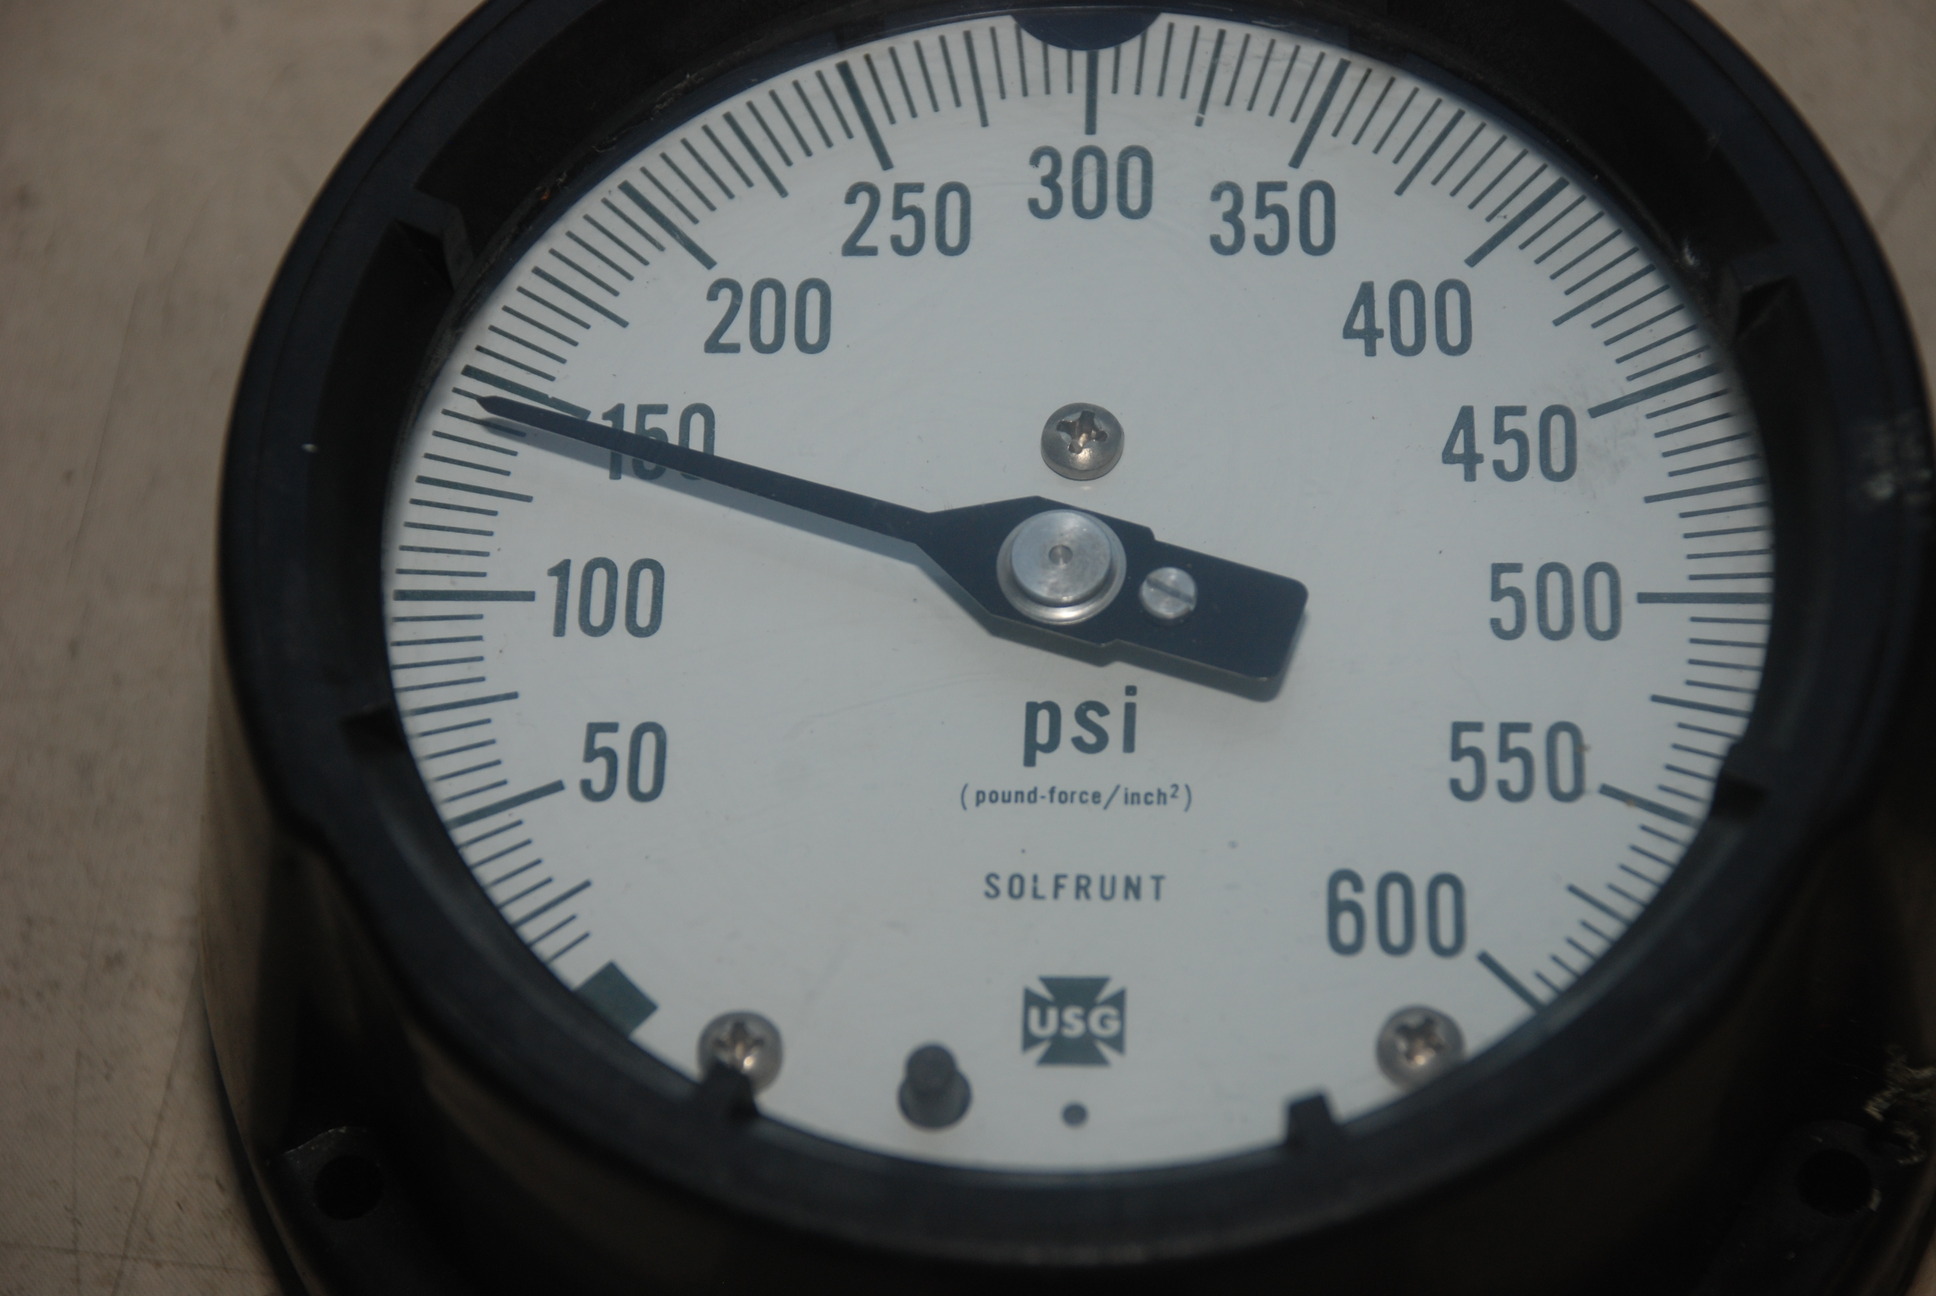 USG Solfrunt 600 Psi Pressure Gauge Made in USA INV=6435 | eBay